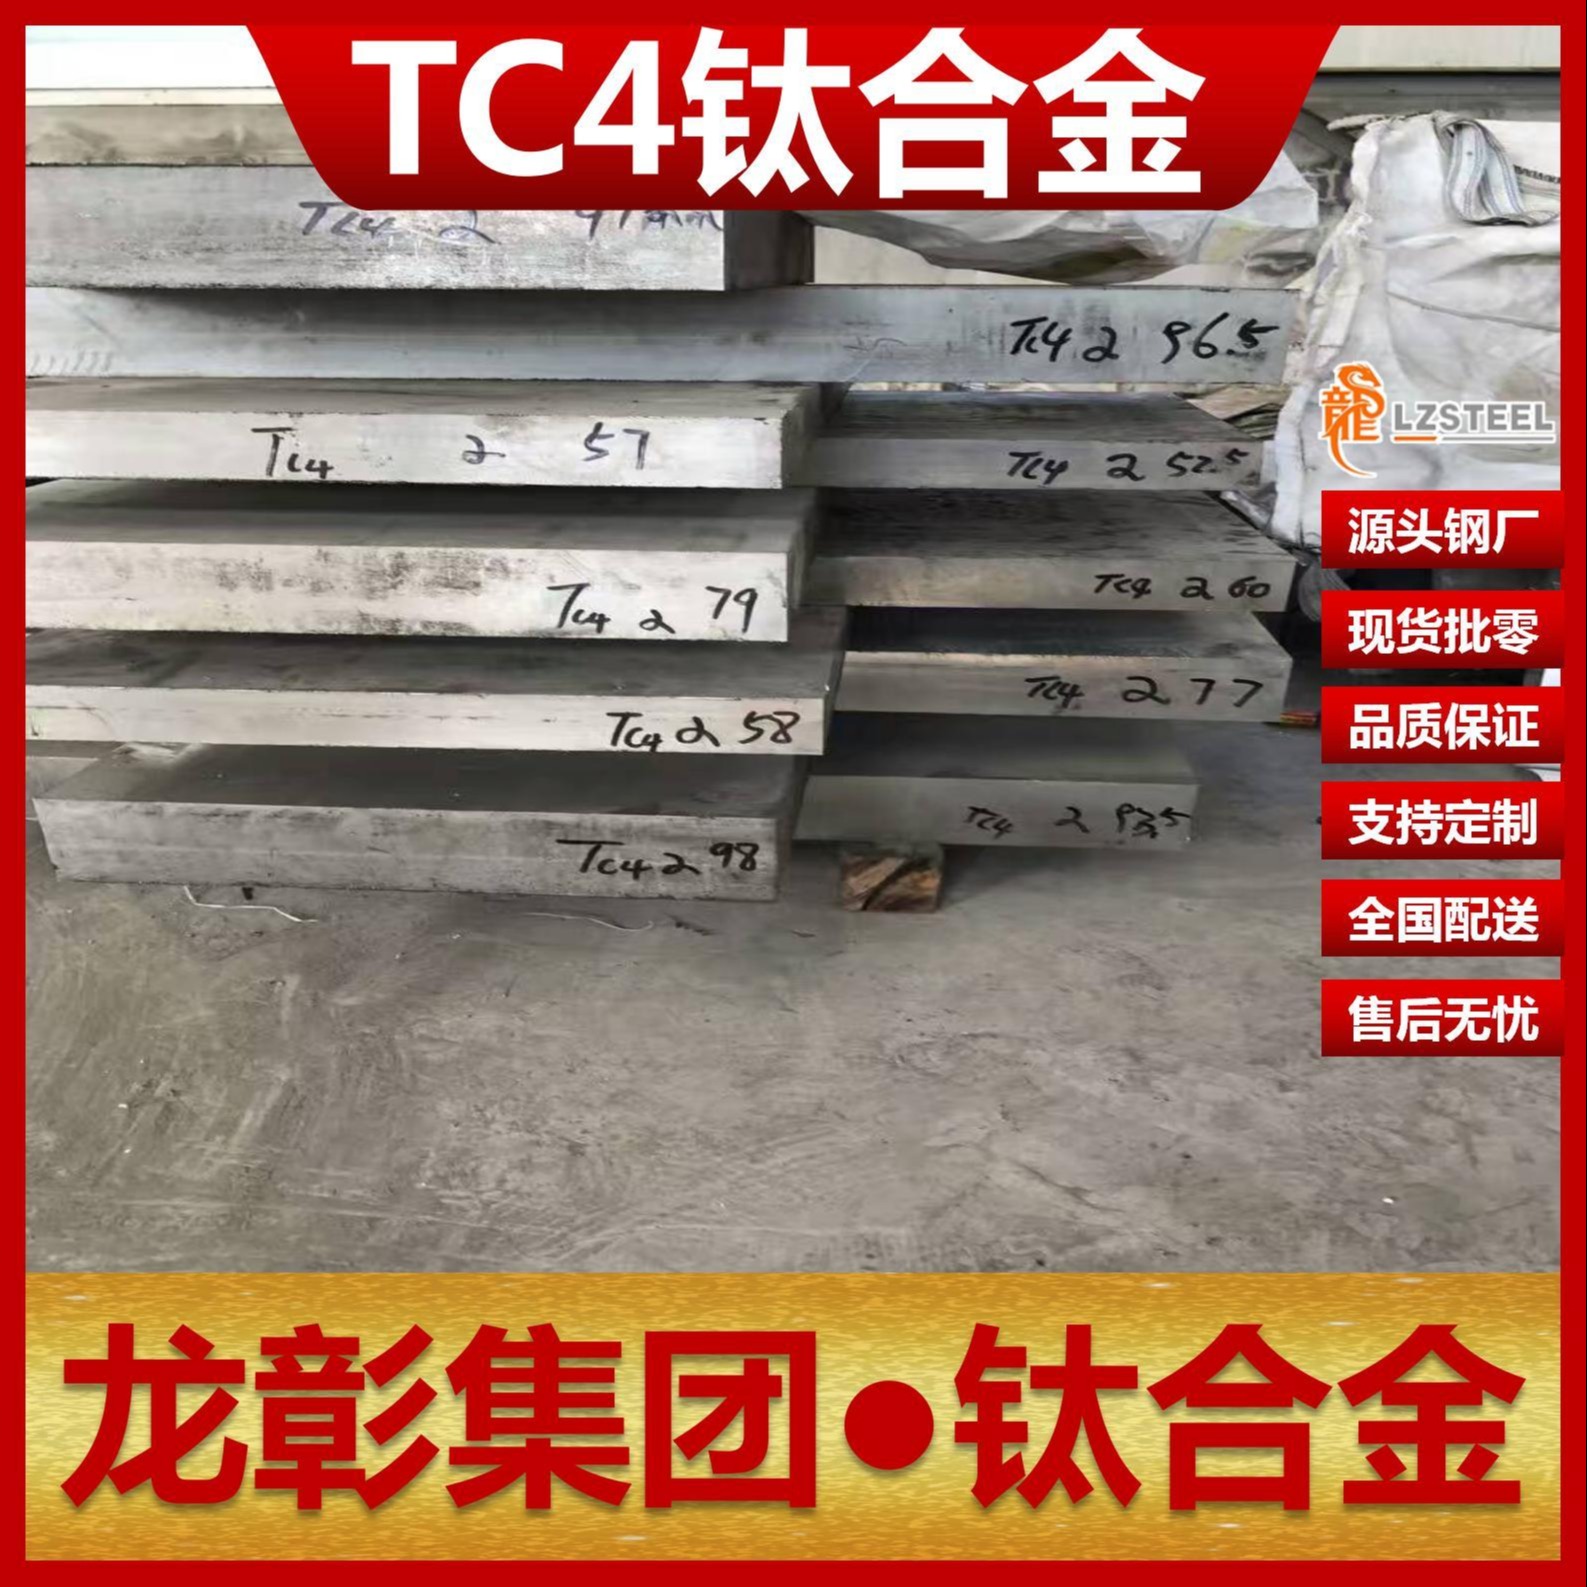 TC4钛合金现货批零钛板高品质 TC4钛板棒管可定制加工龙彰集团图片